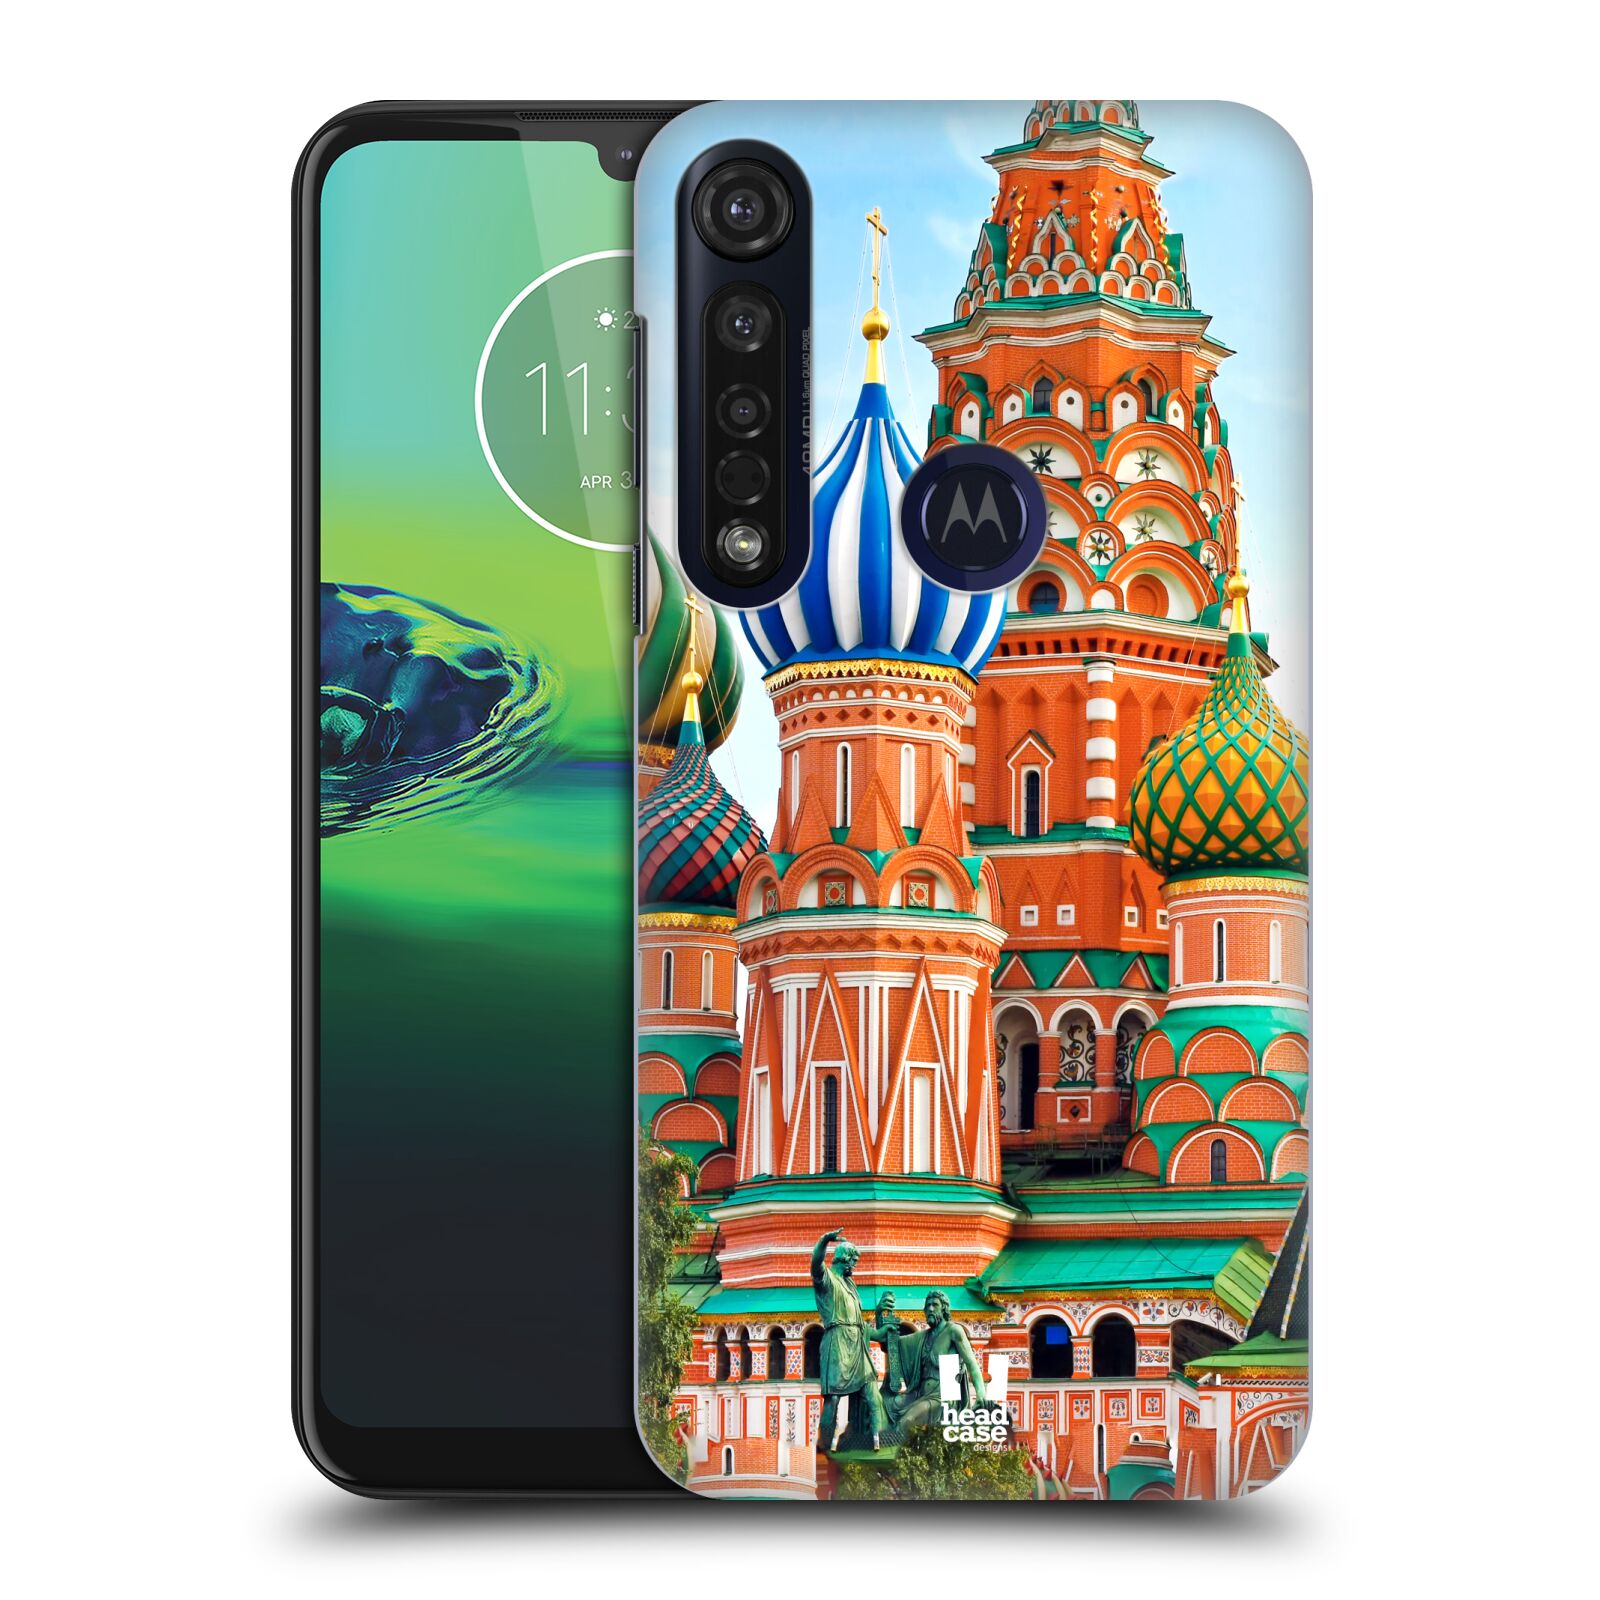 Pouzdro na mobil Motorola Moto G8 PLUS - HEAD CASE - vzor Města foto náměstí RUSKO,MOSKVA, RUDÉ NÁMĚSTÍ